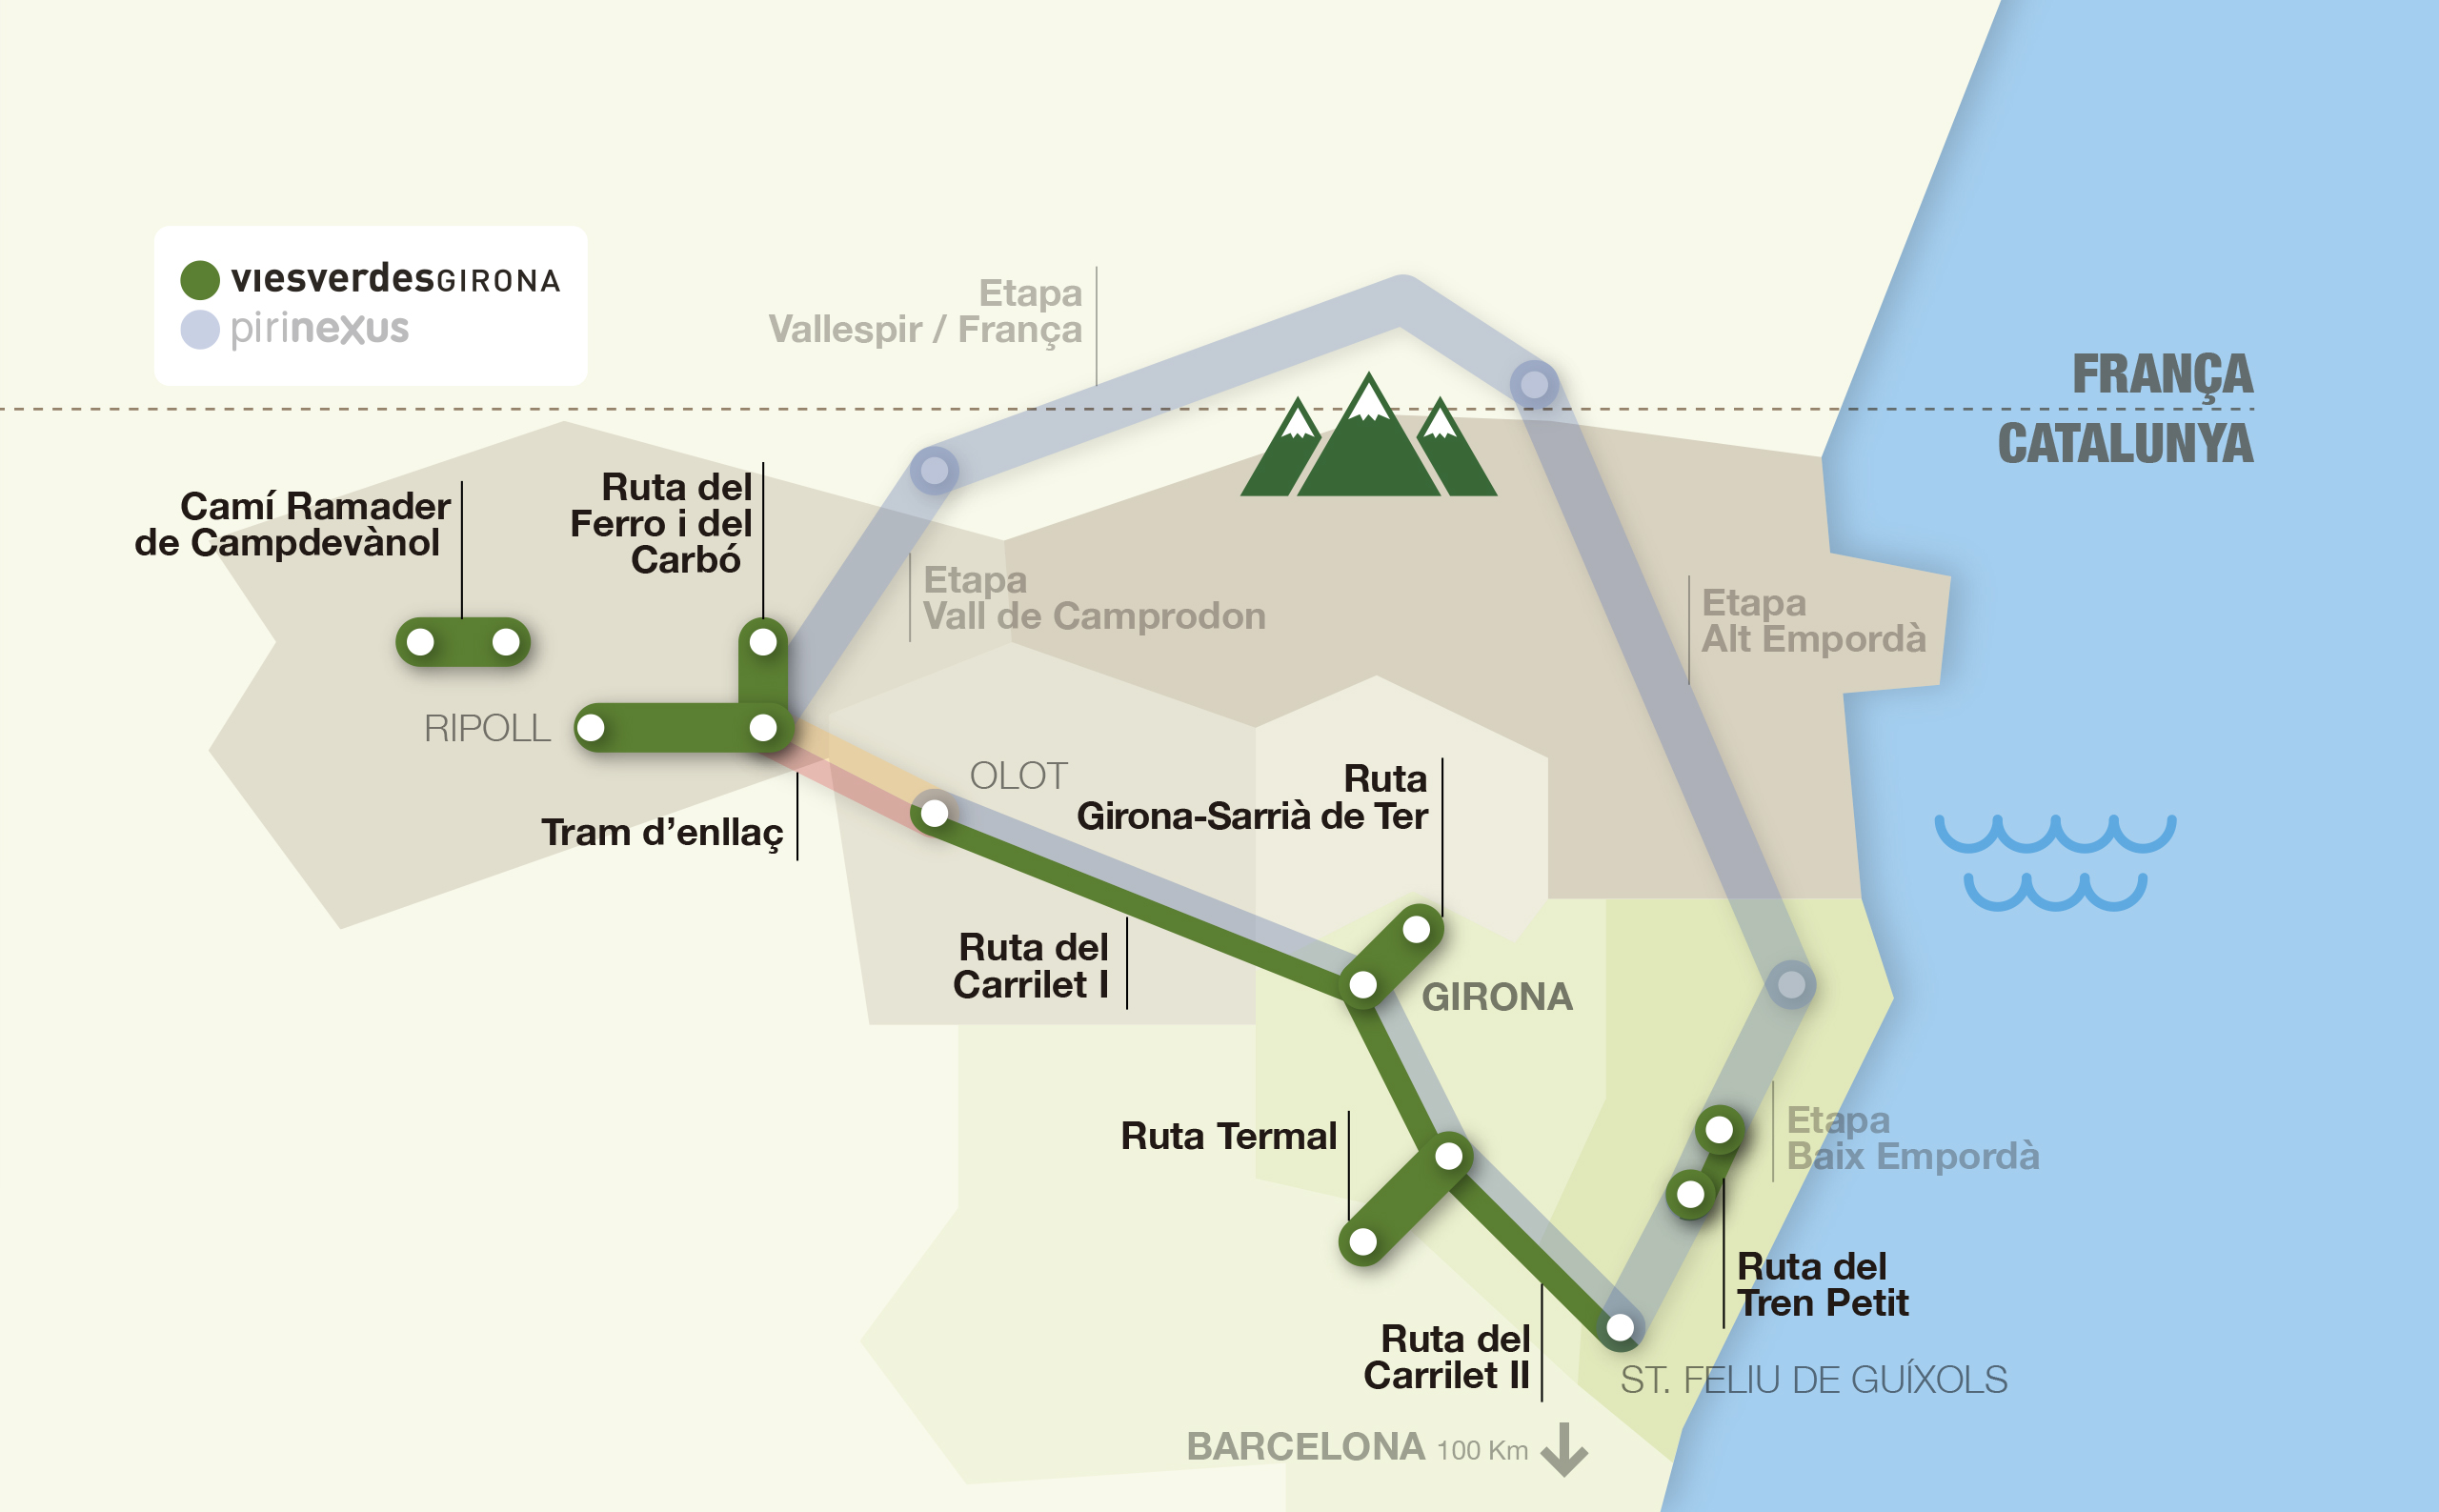 Mapa interactivo de las rutas vías verdes y pirinexus